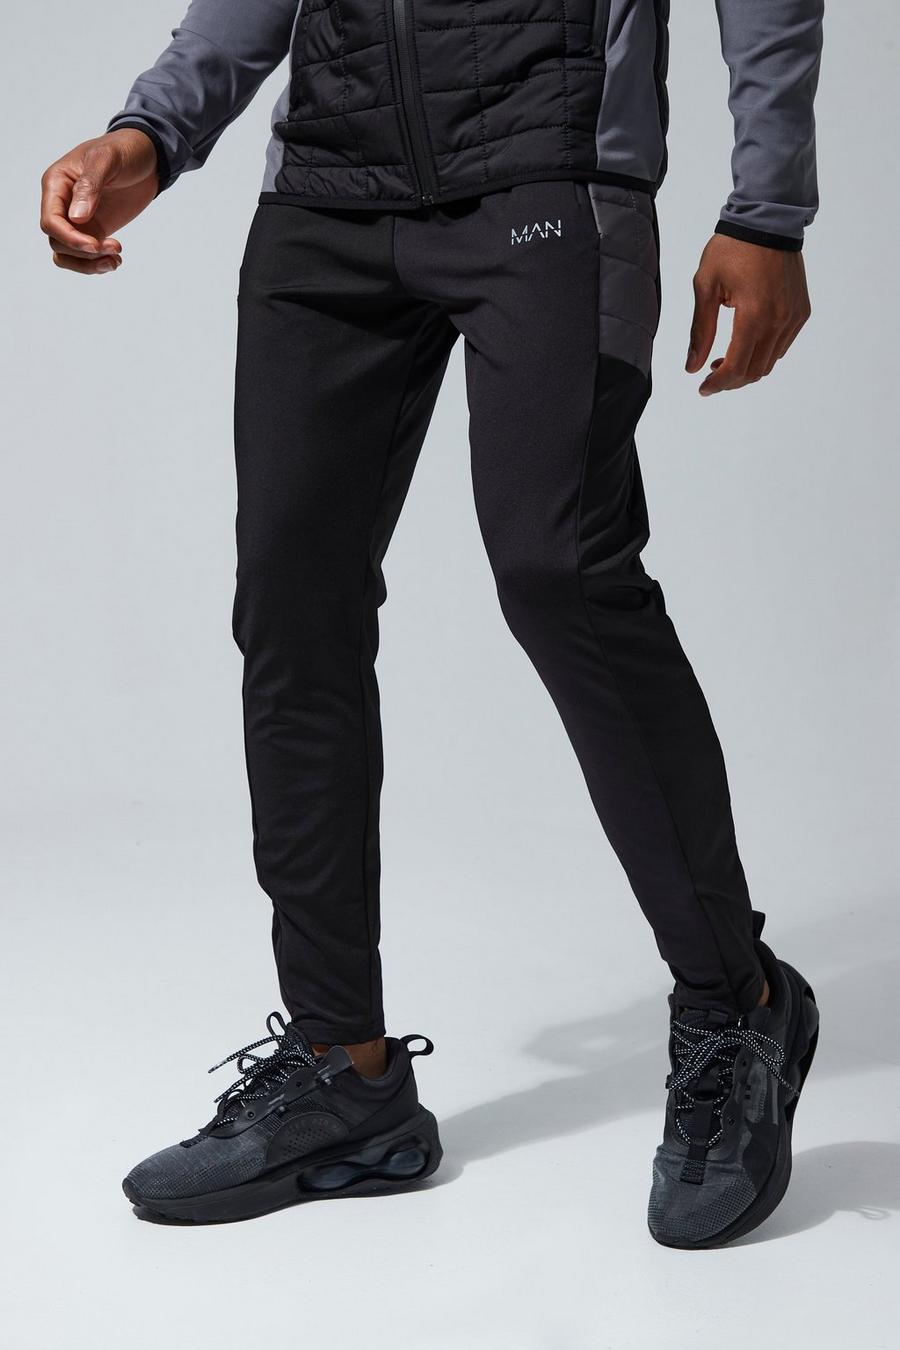 Pantalón deportivo MAN Active pitillo acolchado híbrido, Black negro